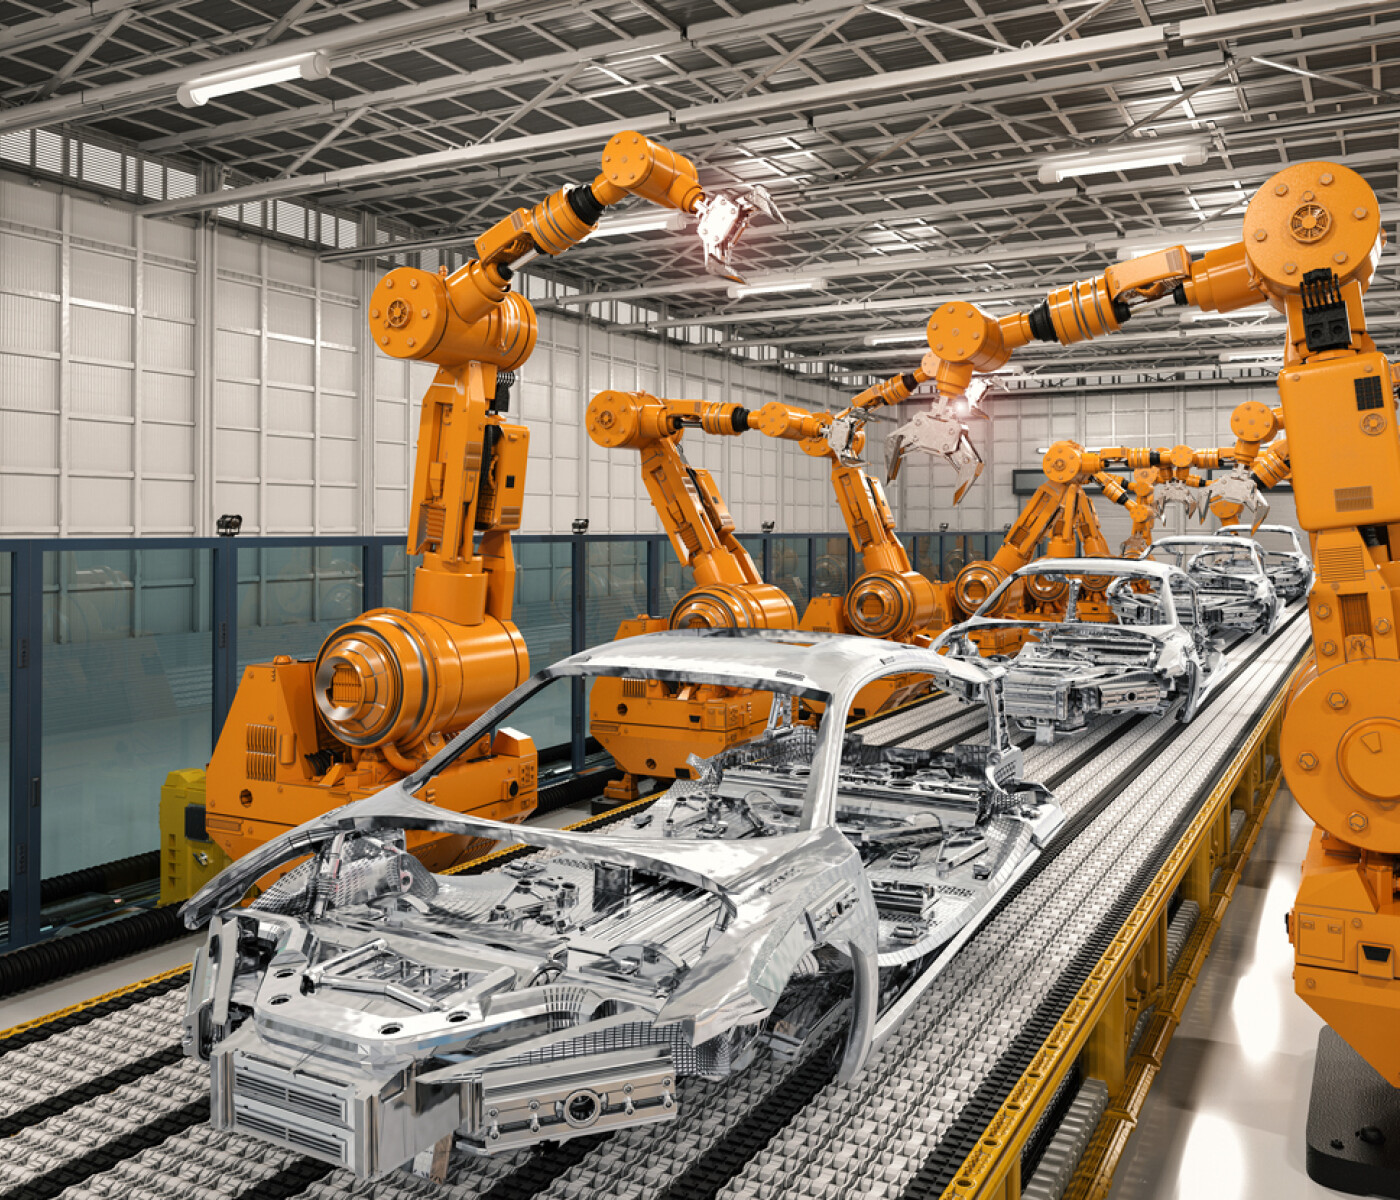 Modern automatized car assembly line.